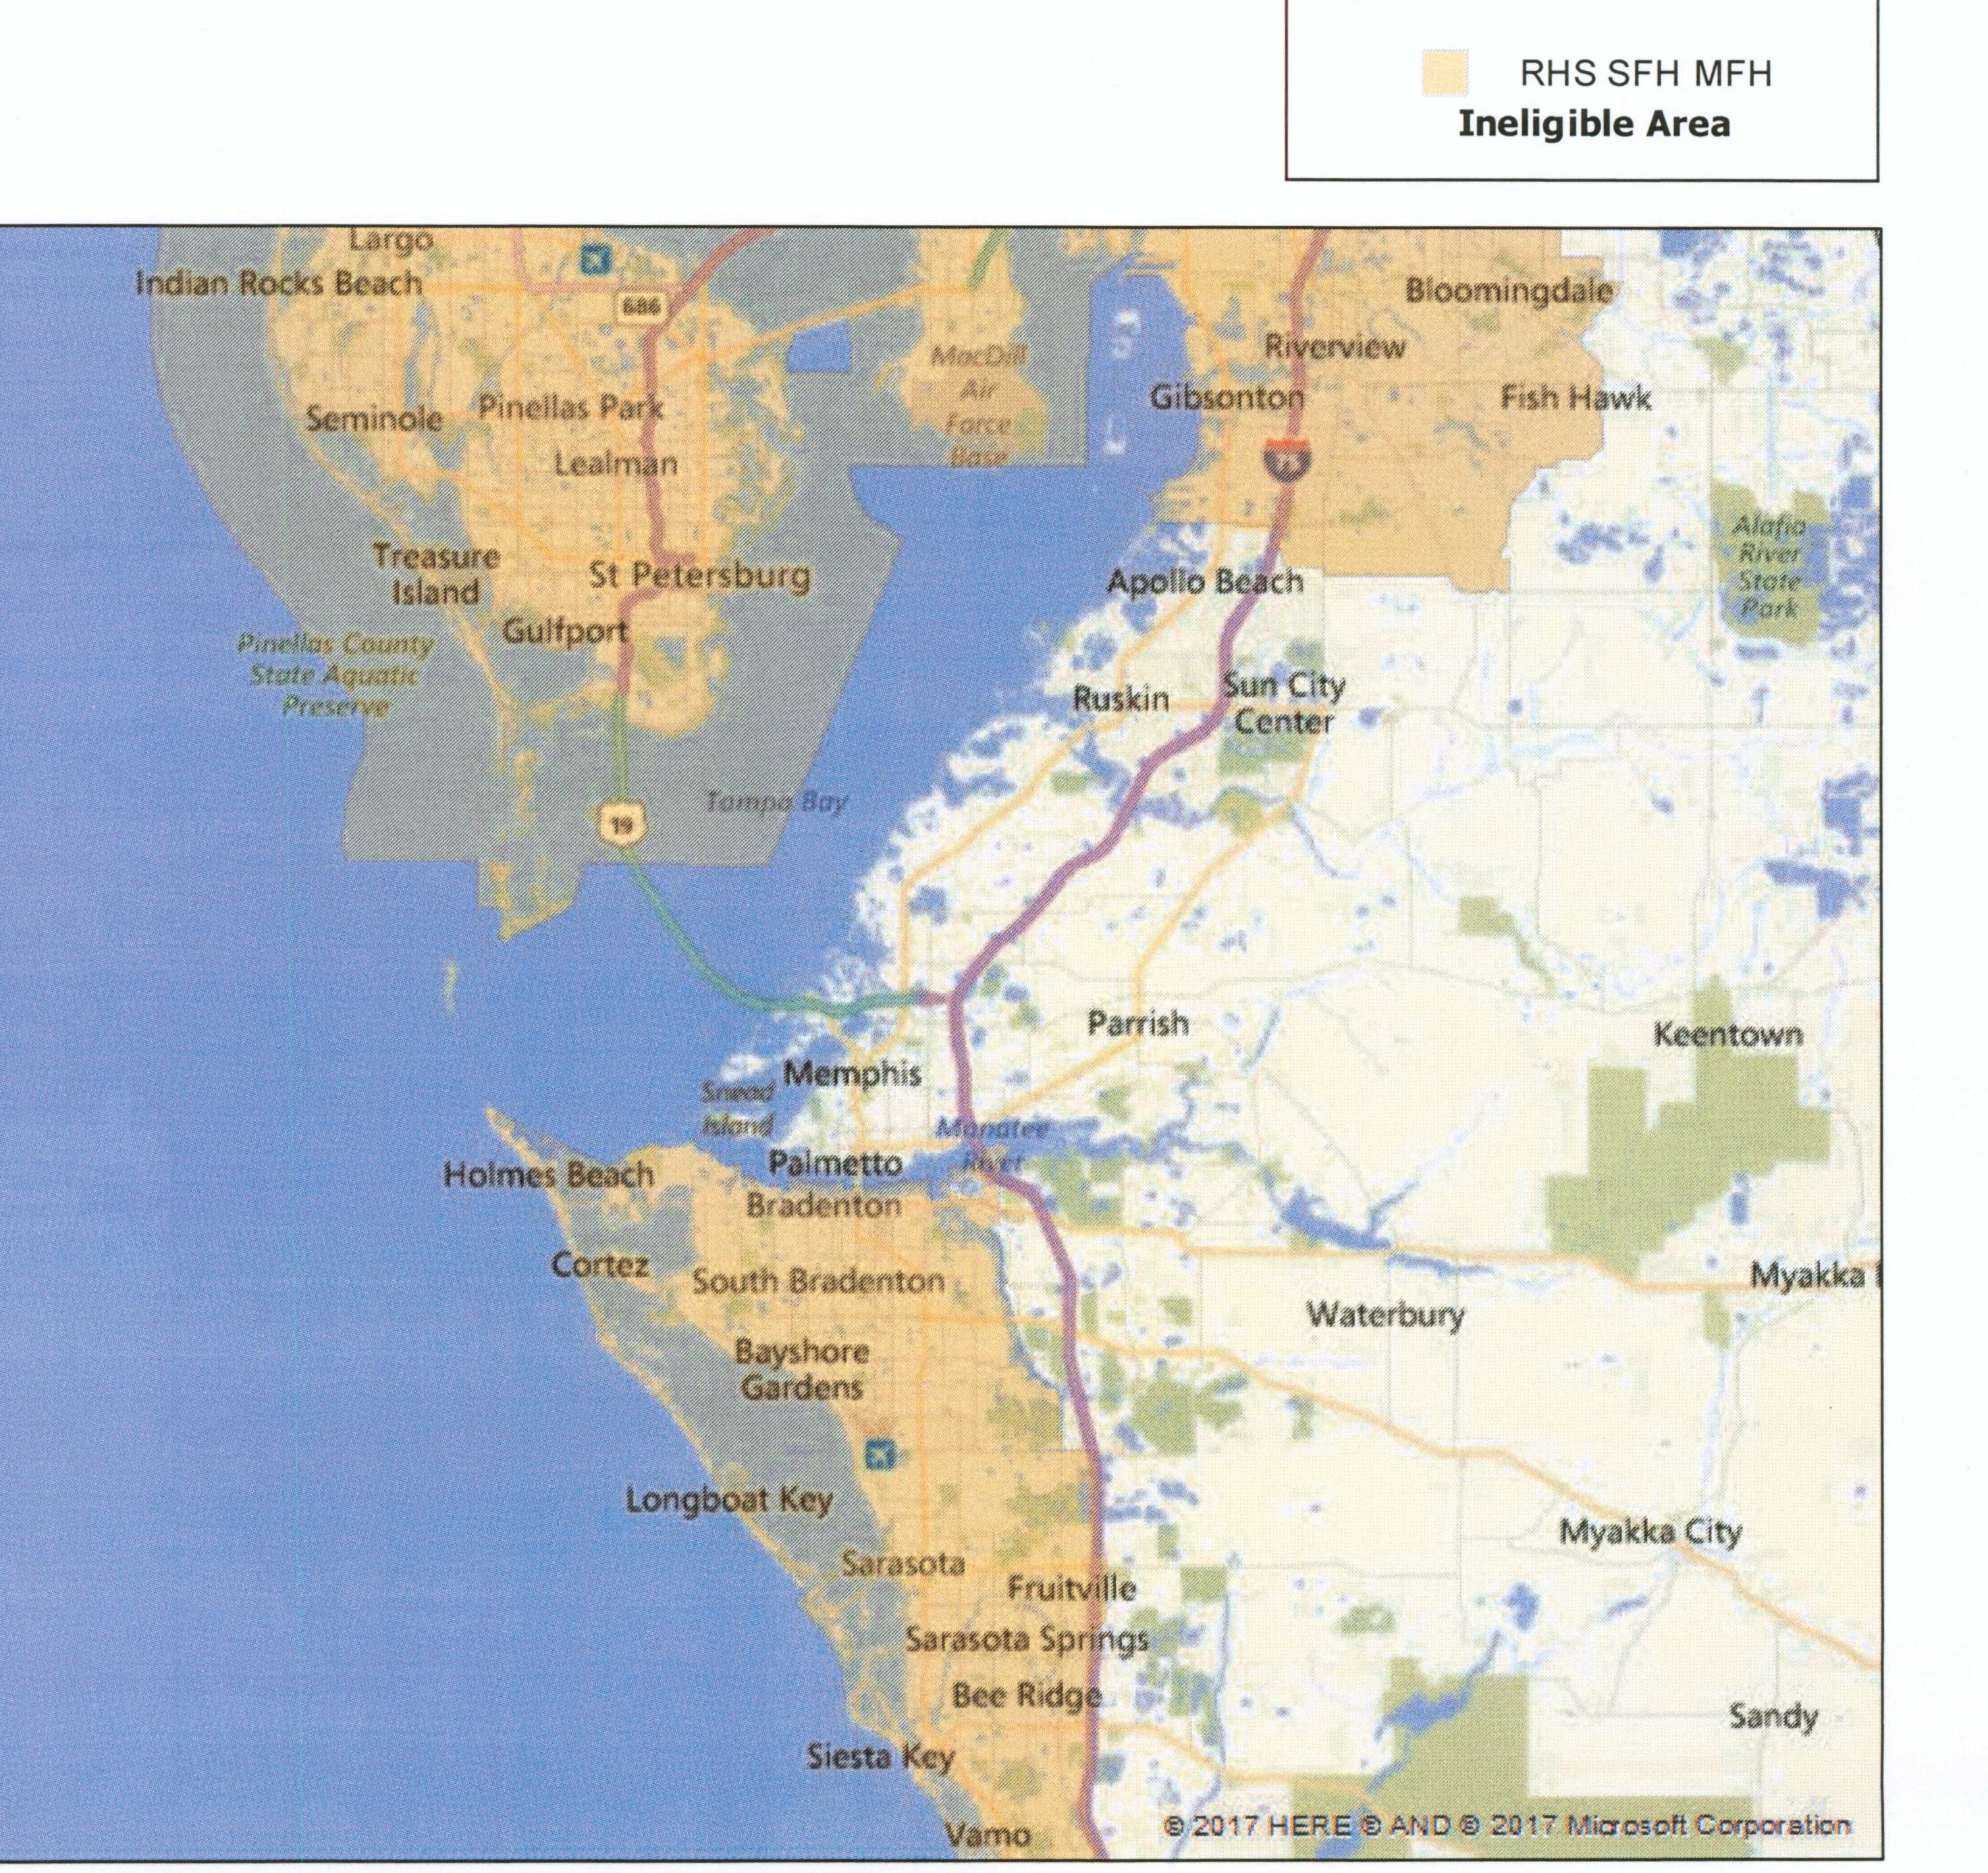 Usda Loan | Multiline Mortgage | (941) 201-9111 | Multiline Mortgage - Usda Eligibility Map Florida